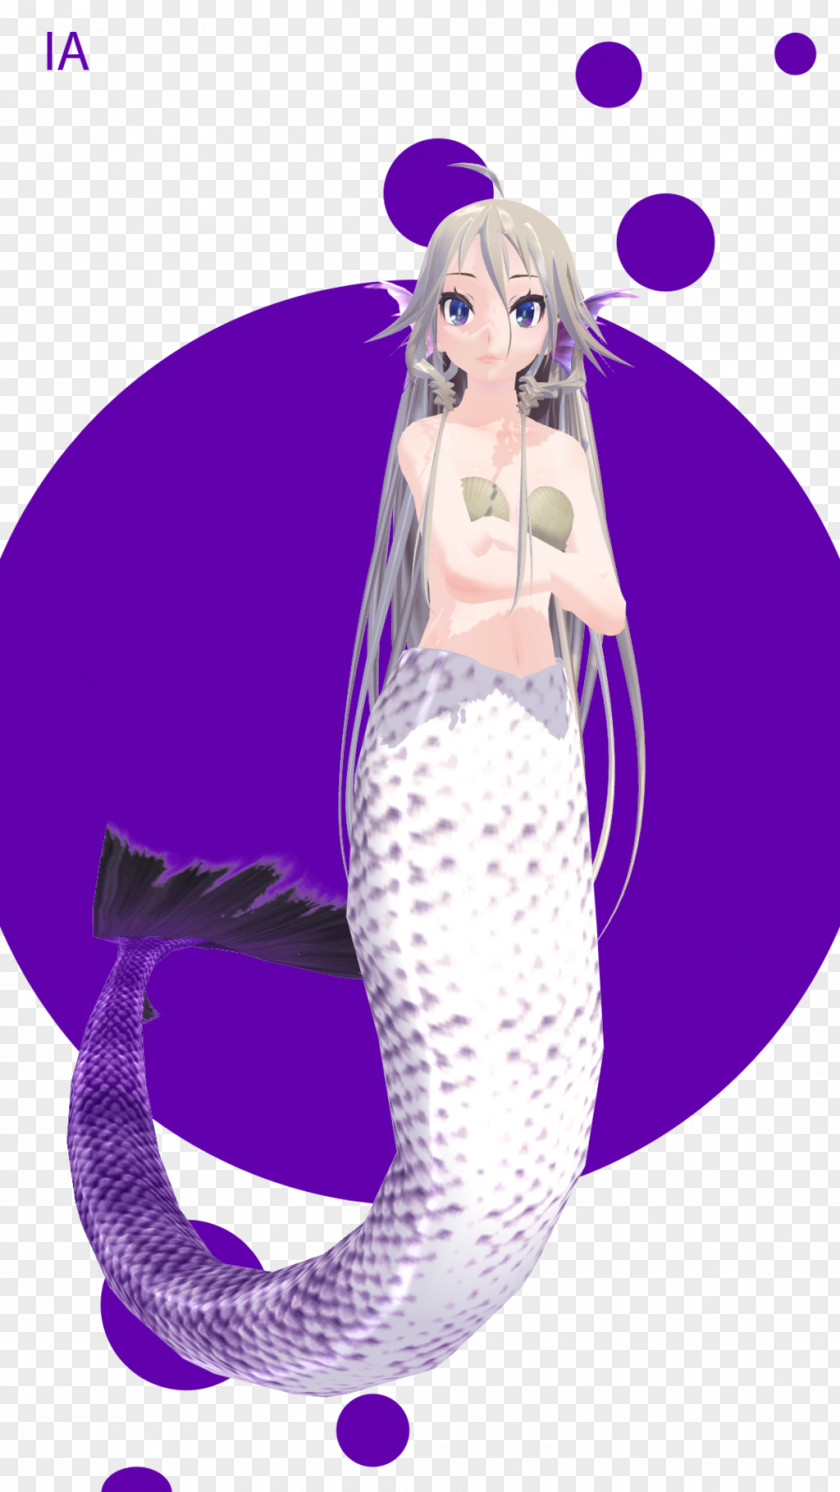 Mermaid MikuMikuDance Hatsune Miku IA Illustration PNG